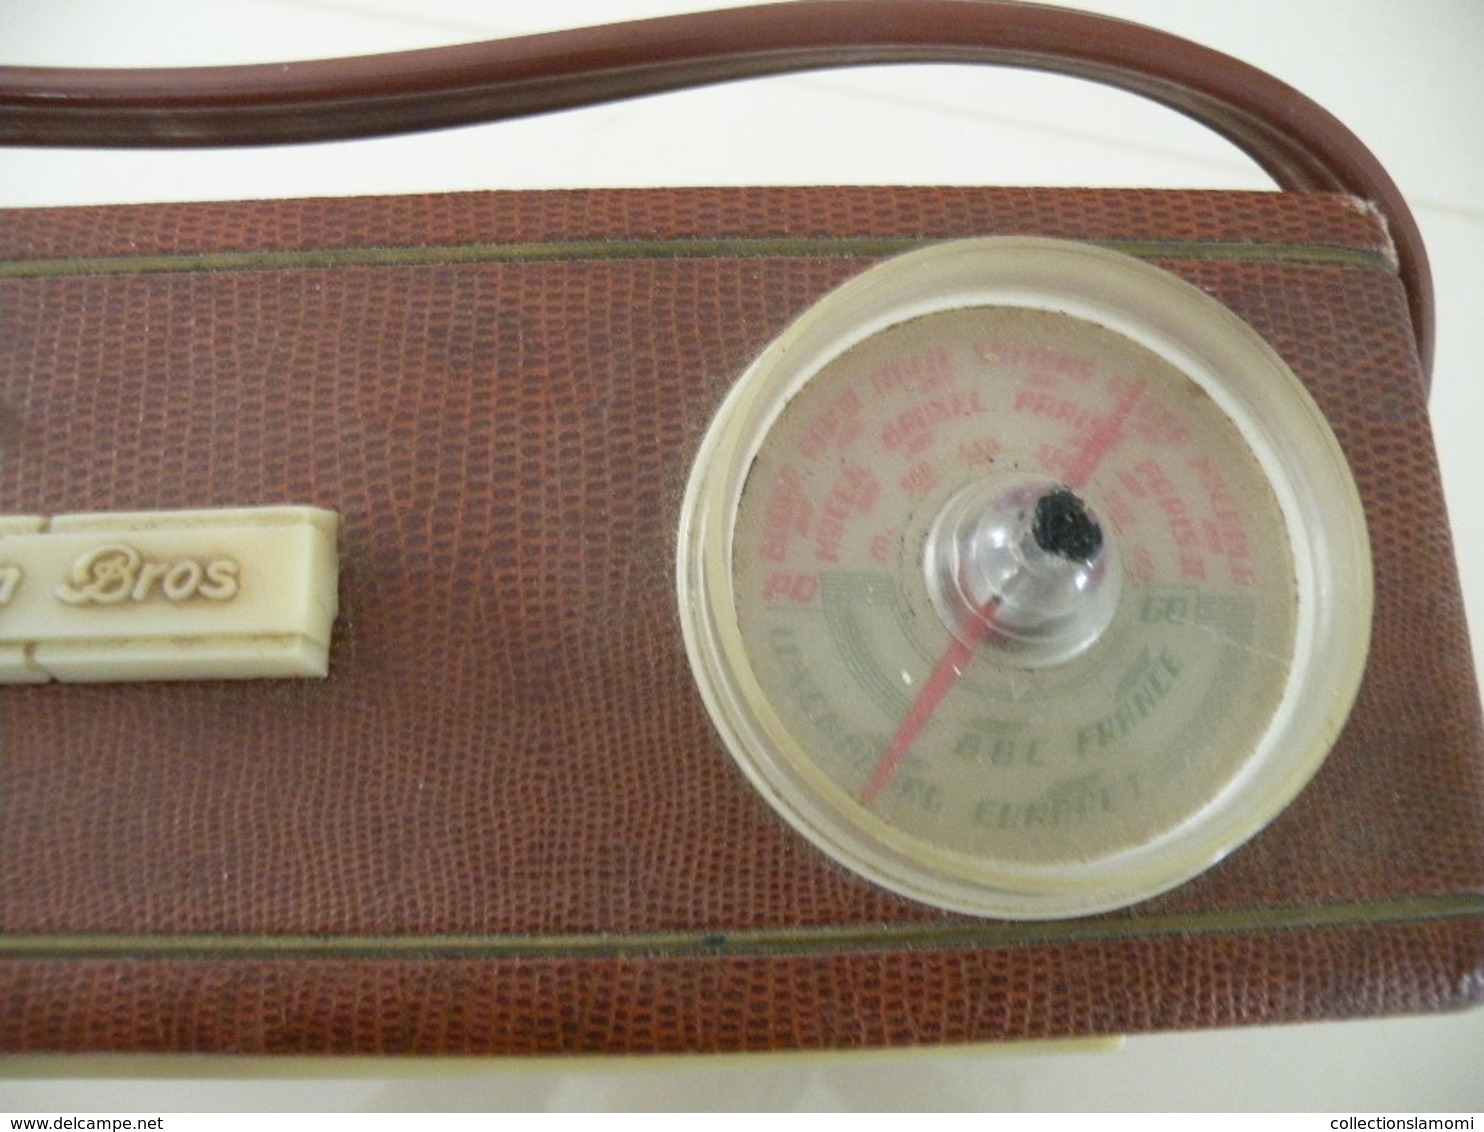 Ancienne Radio Transistor Seven (Pizon Bros) En état De Fonction (0,28cm X 0,11 Cm H 0,21) Avec Son étui En Cuir - Apparatus